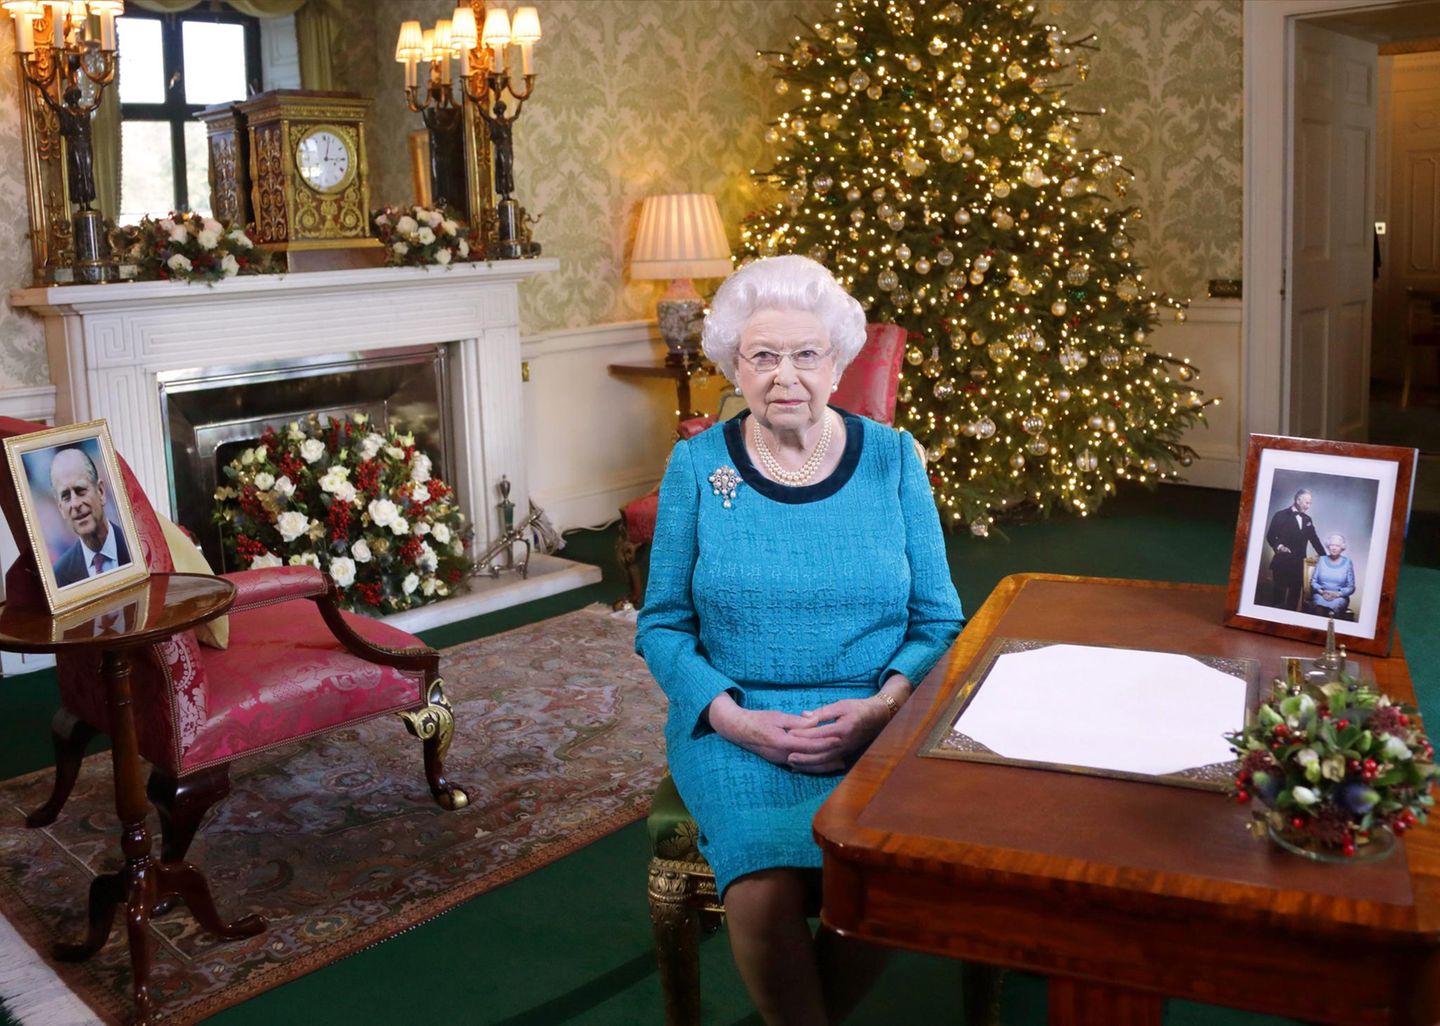 Während ihrer traditionellen Weihnachtsansprache im Fernsehen, lies Königin Elizabeth II. so einigen Nerds das Herz höher schlagen. In ihrem blauen Kleid sorgte ihre Majestät für einen genauso witzigen wie ungewollten Vergleich. Aber sehen Sie selbst ...